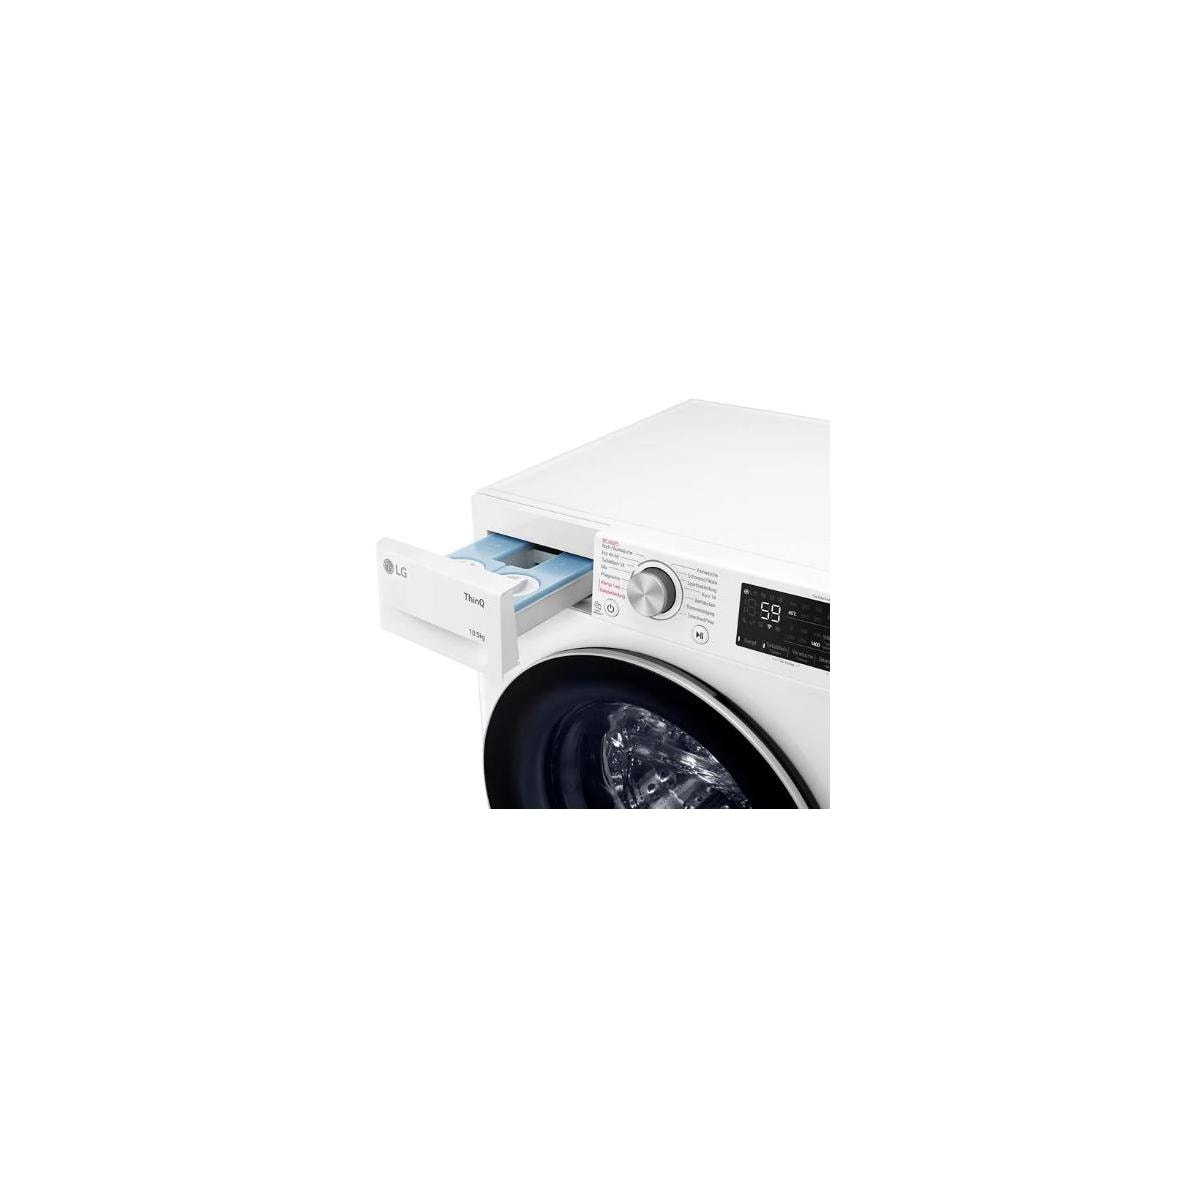 LG F4WV75X1 10,5kg Frontlader Waschmaschine, 60 cm breit, Aqua Lock,  Mengenautomatik, Kindersicherung, Autodosierung, weiß Elektroshop Wagner